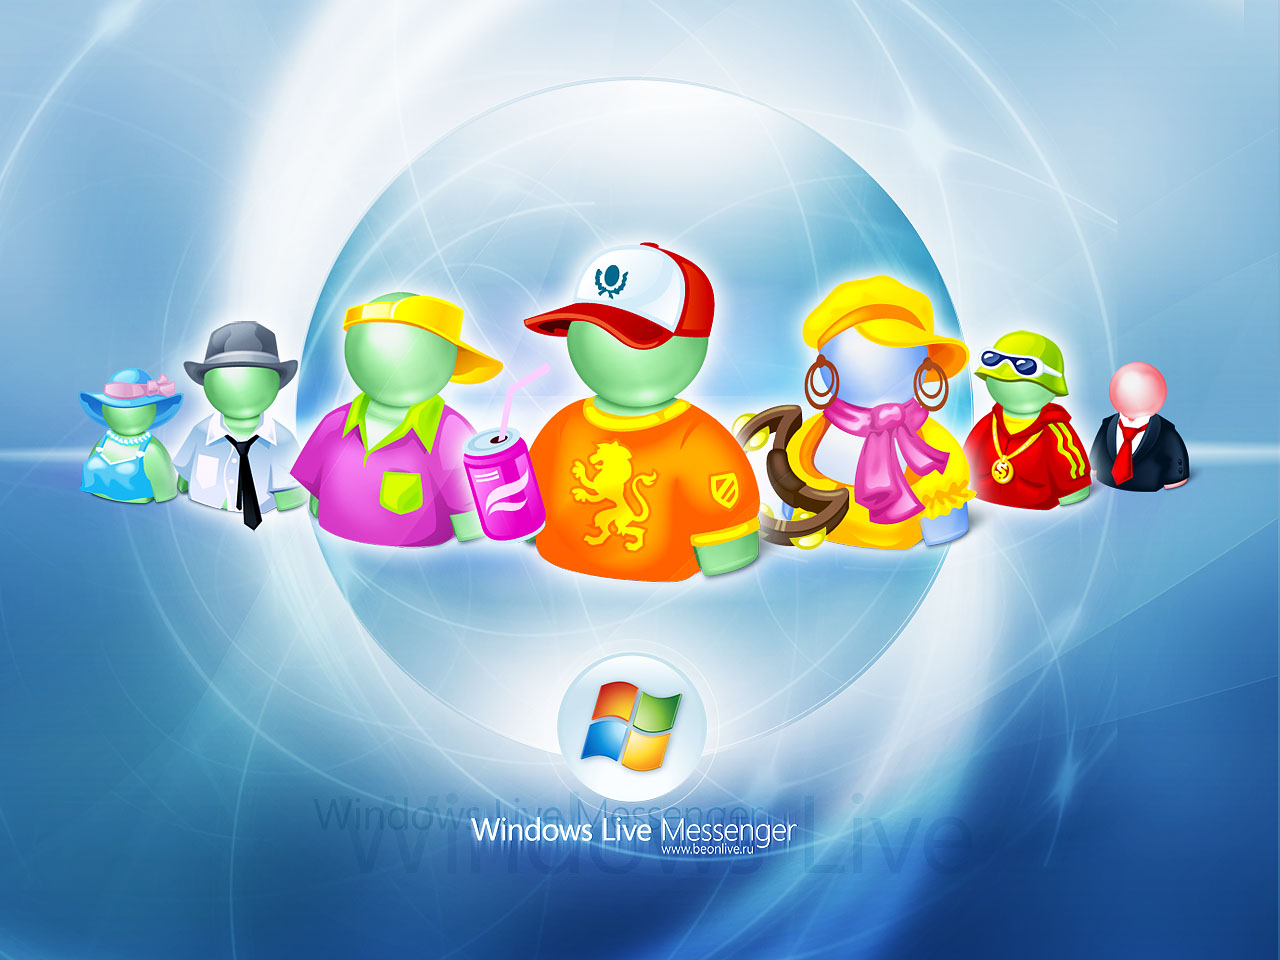 Windows Live Messenger 2011 Xp Patch